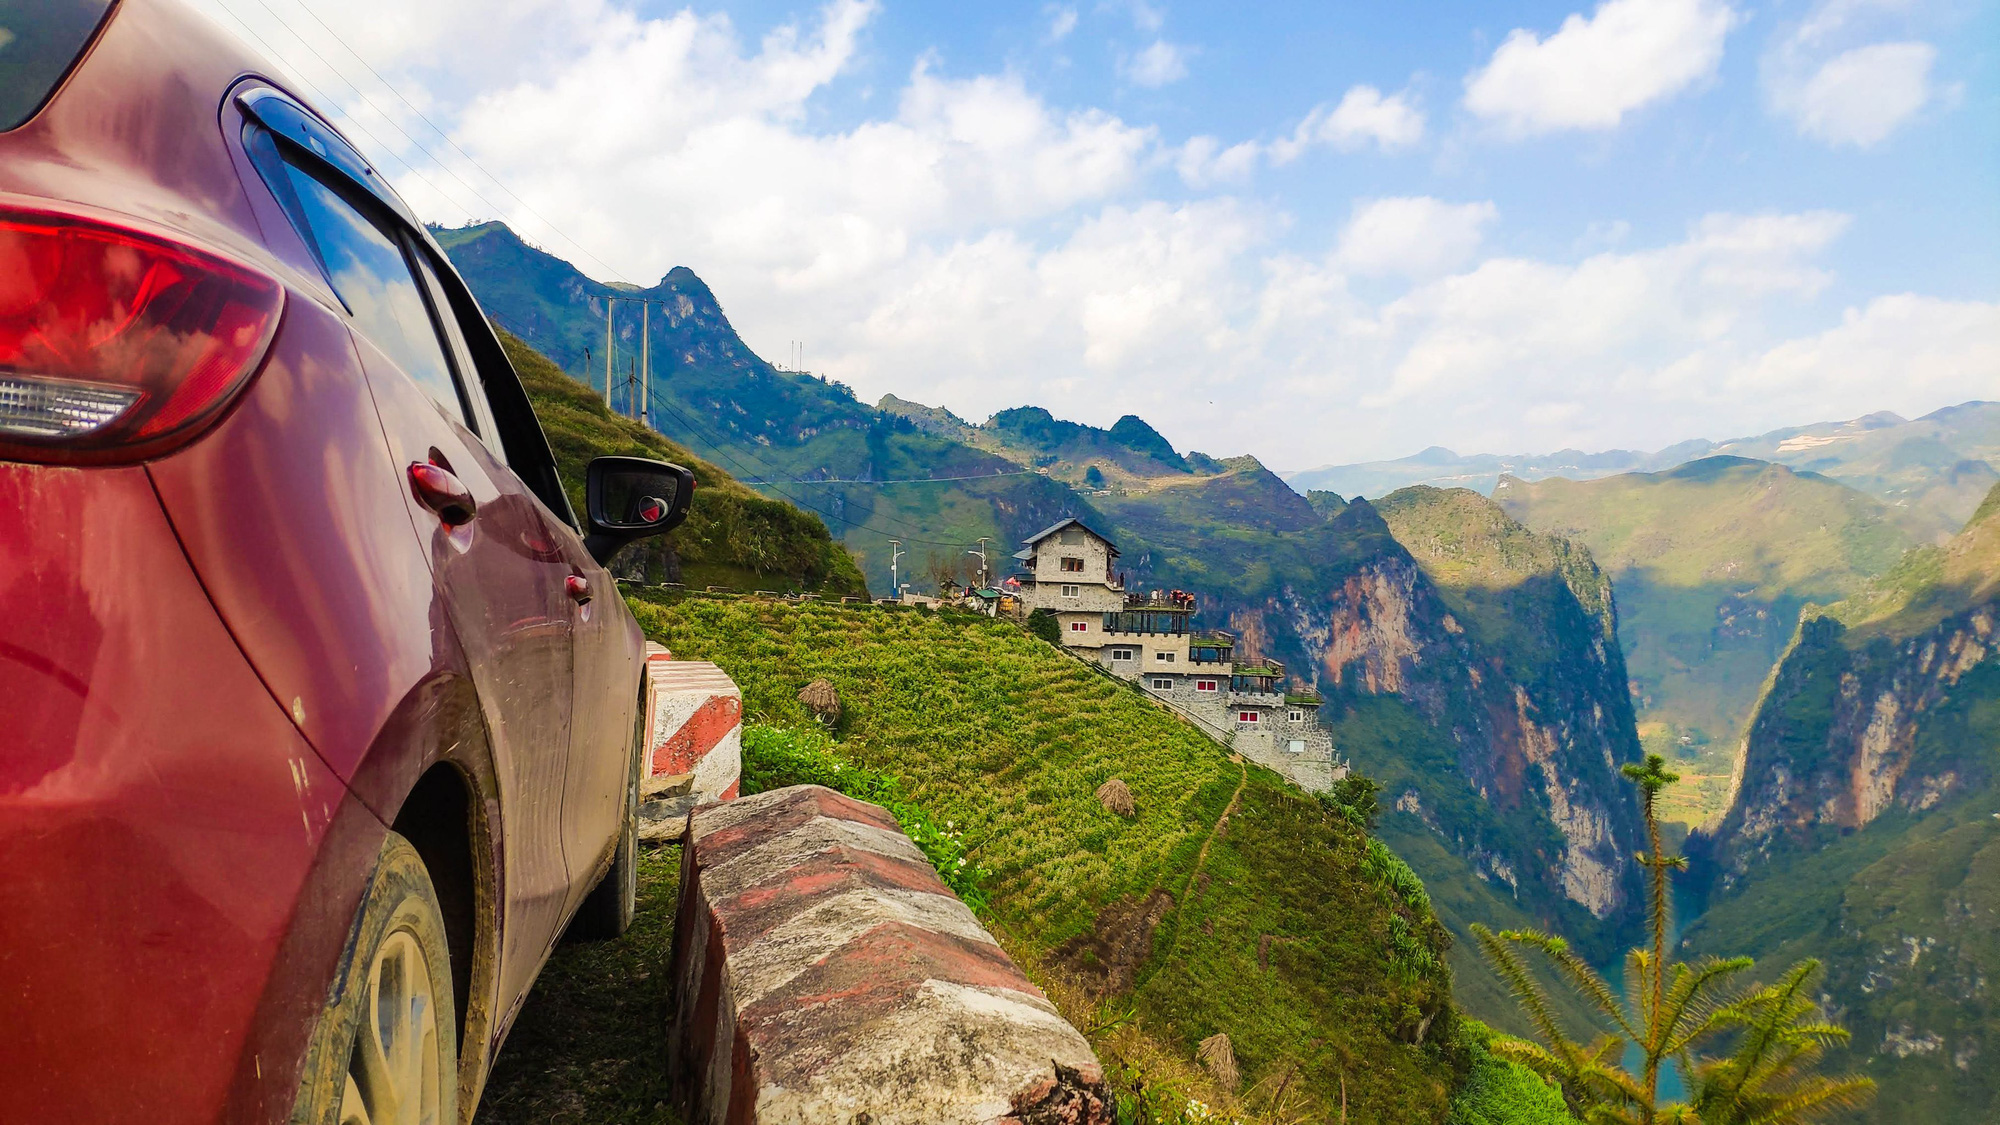 Xuyên Việt hơn 3.500km cùng Mazda2, người dùng đánh giá: Bốc, lái hay, tiết kiệm xăng nhưng chật và hơi ồn - Ảnh 5.